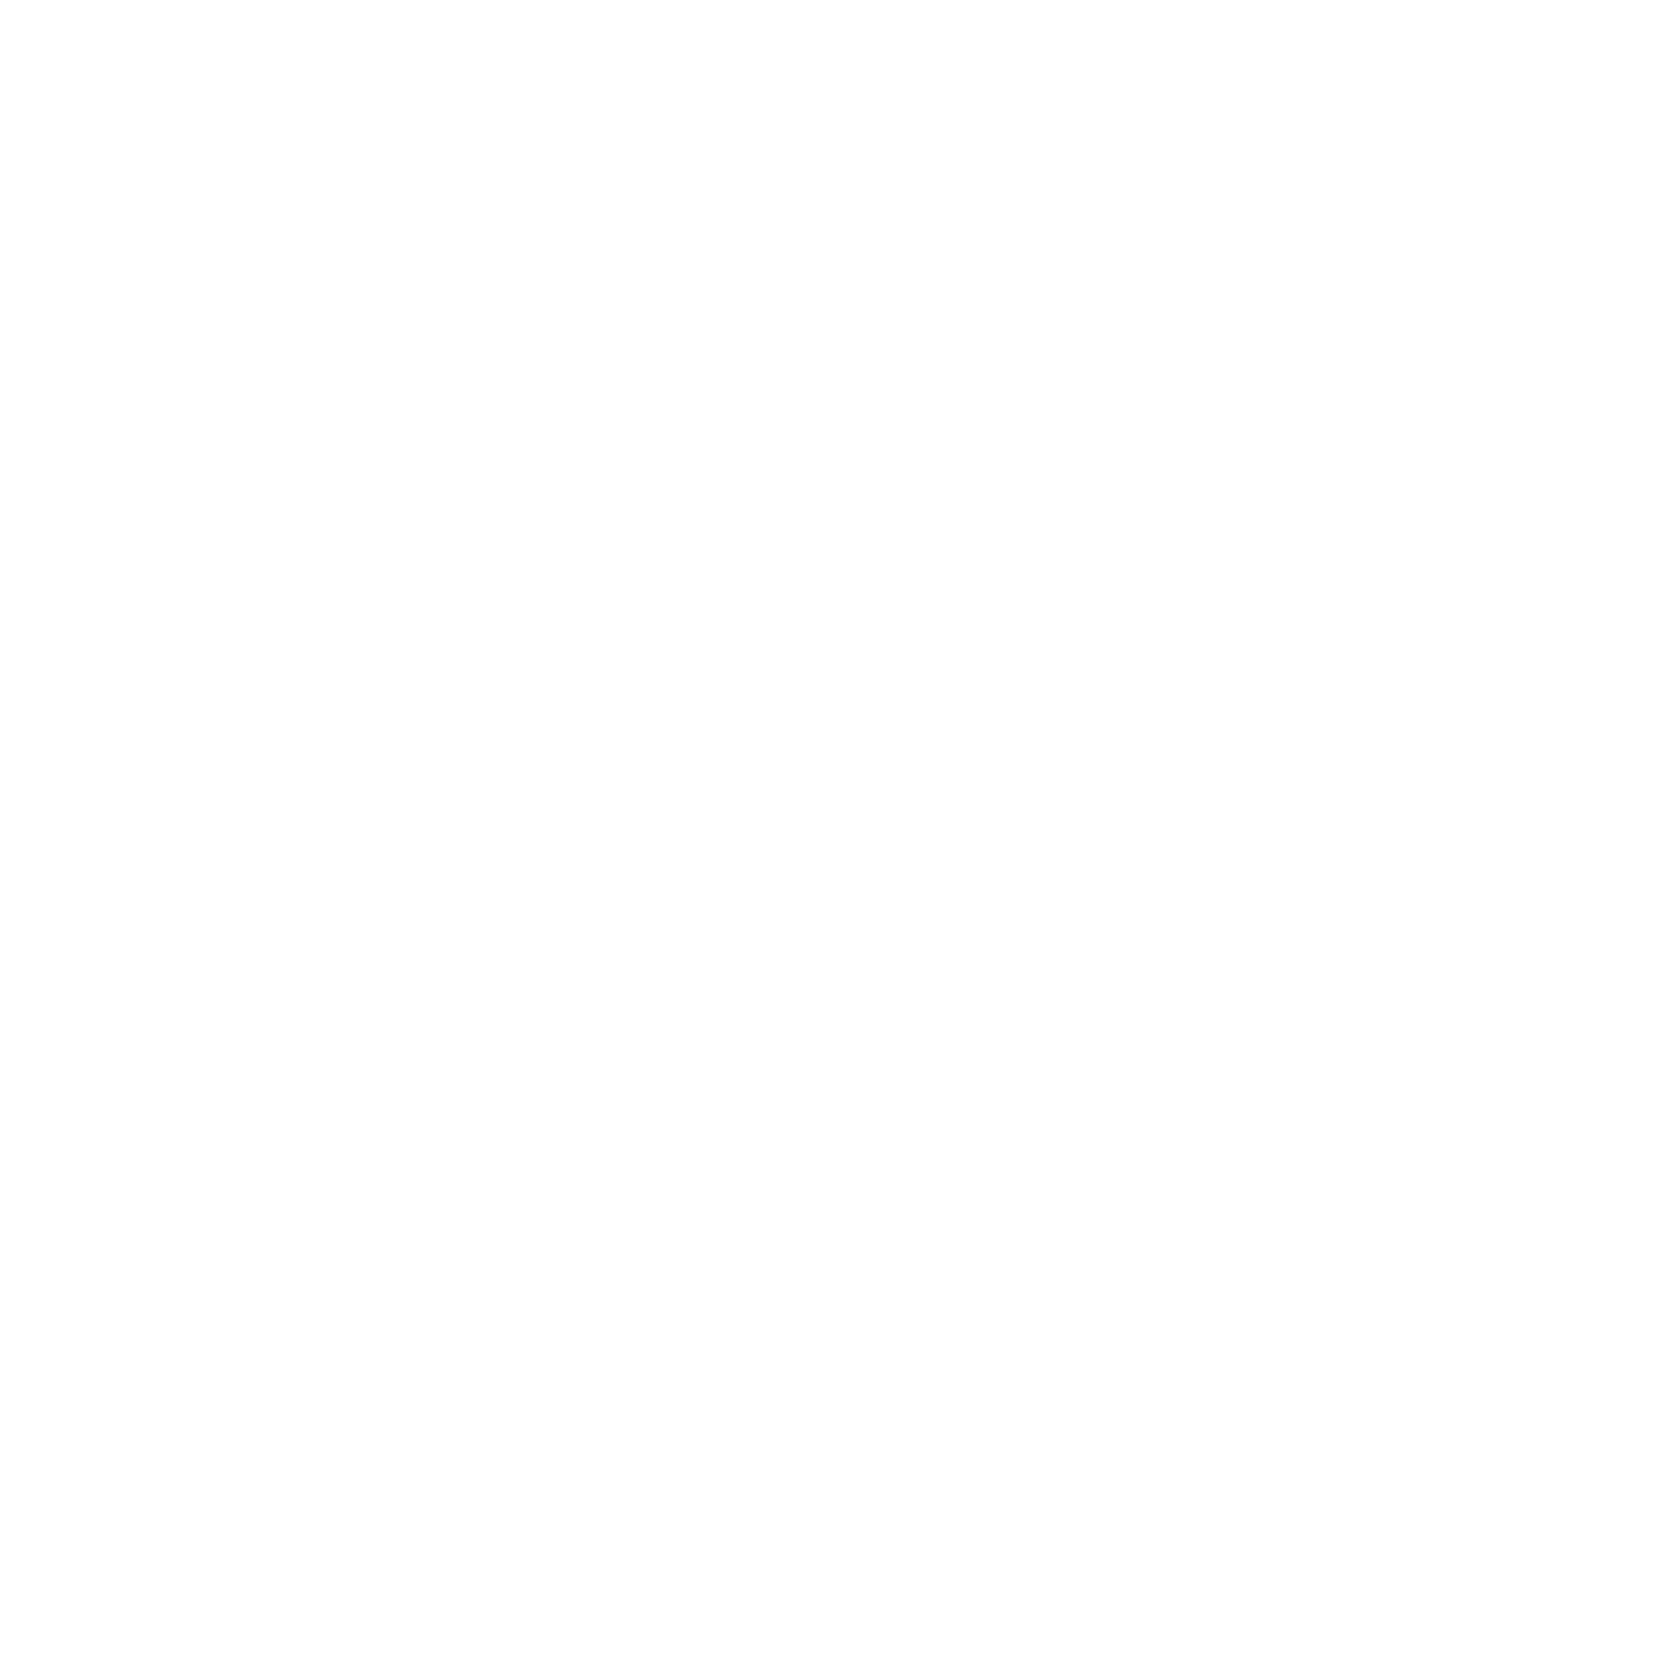 GTCR